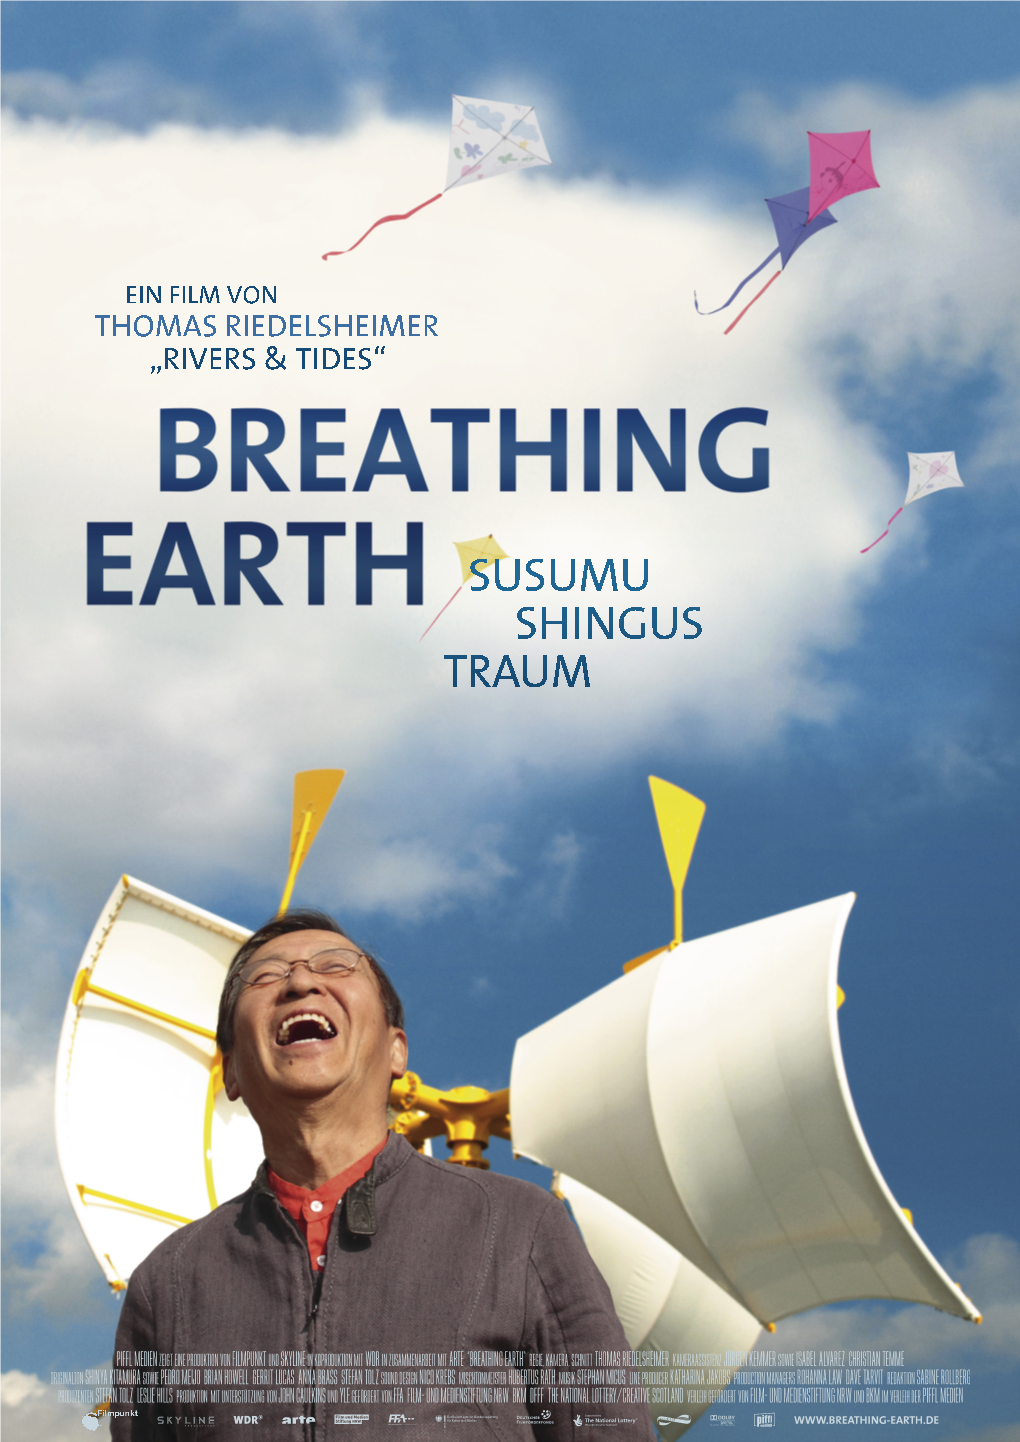 Breathing Earth“ Zu Ver- Ich Möchte in Meiner Arbeit Die Energien Wirklichen, Das Eine Art Utopischer Idealort Ist, in Dem Natur Und Kunst Ineinander Aufgehen